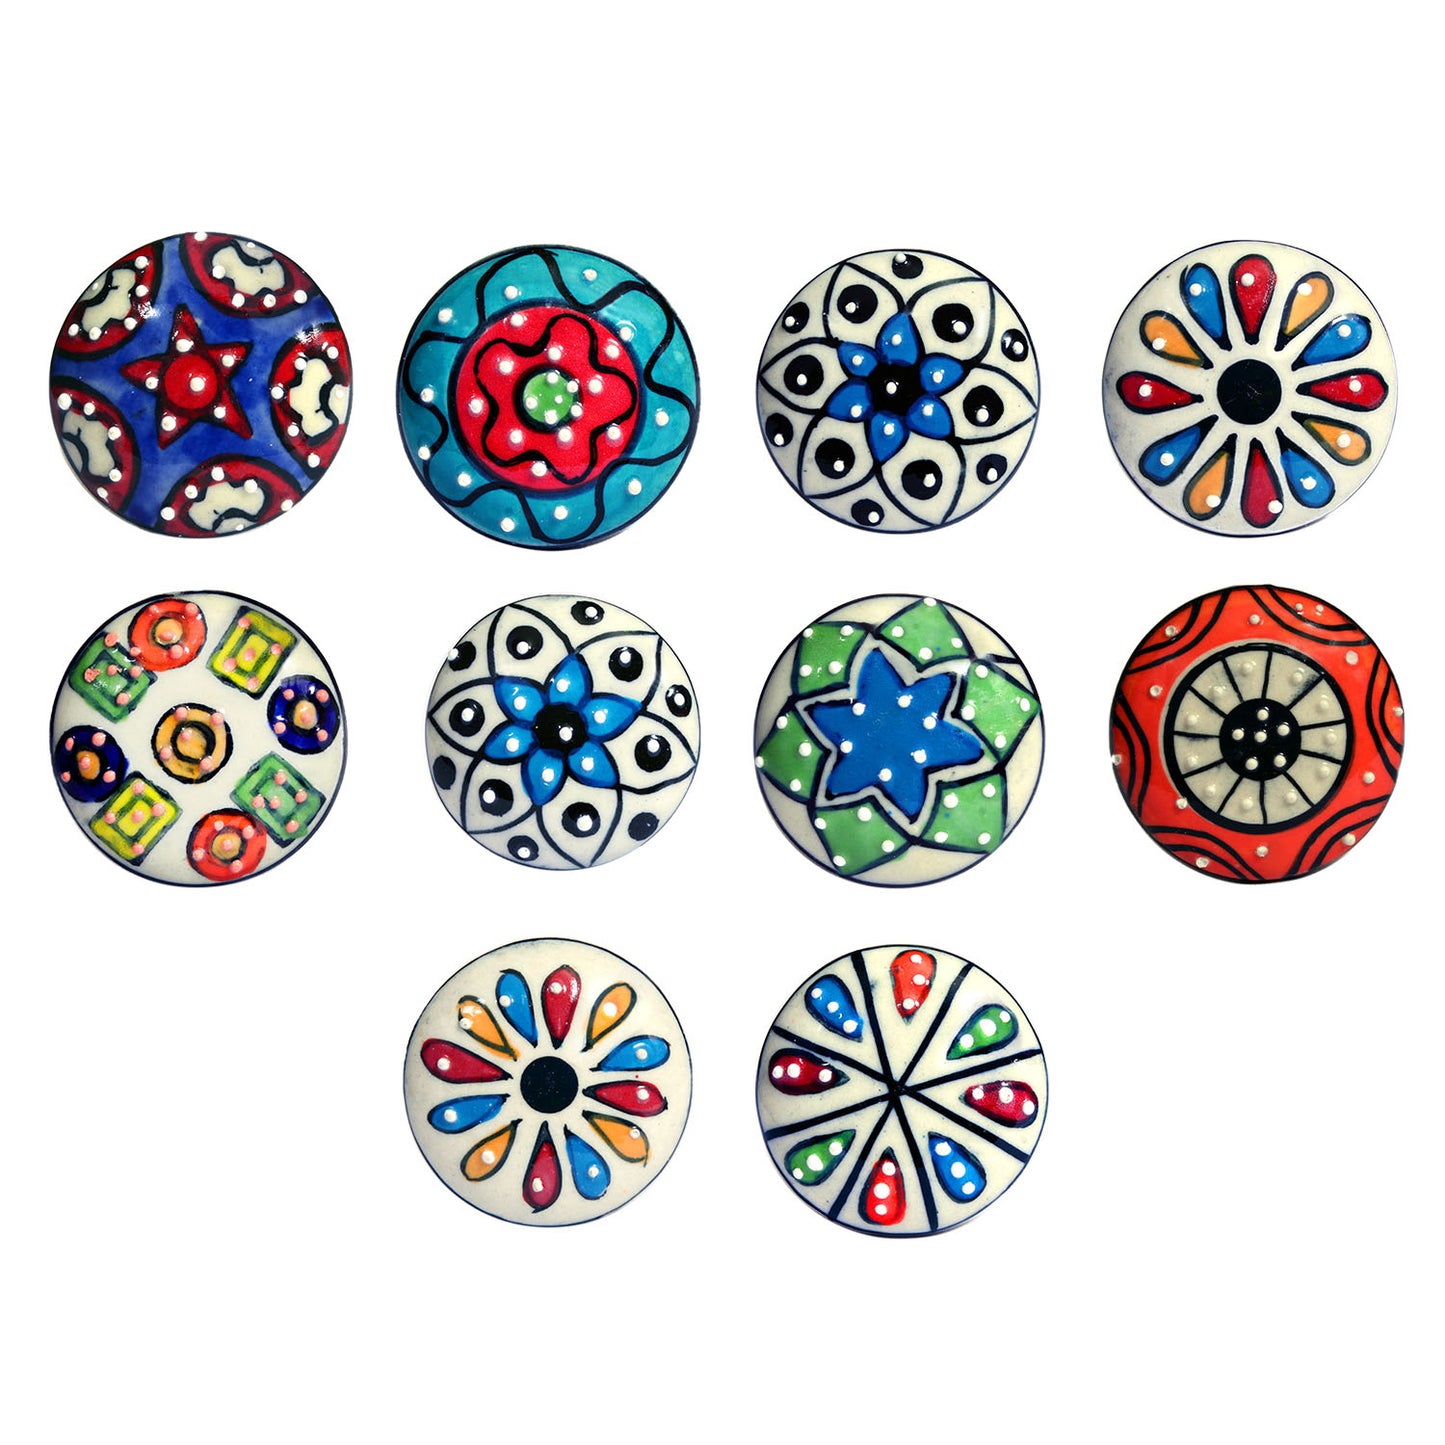 Juego de 10 pomos tiradores de cerámica con diseño de flores y puntos de colores para muebles y habitaciones